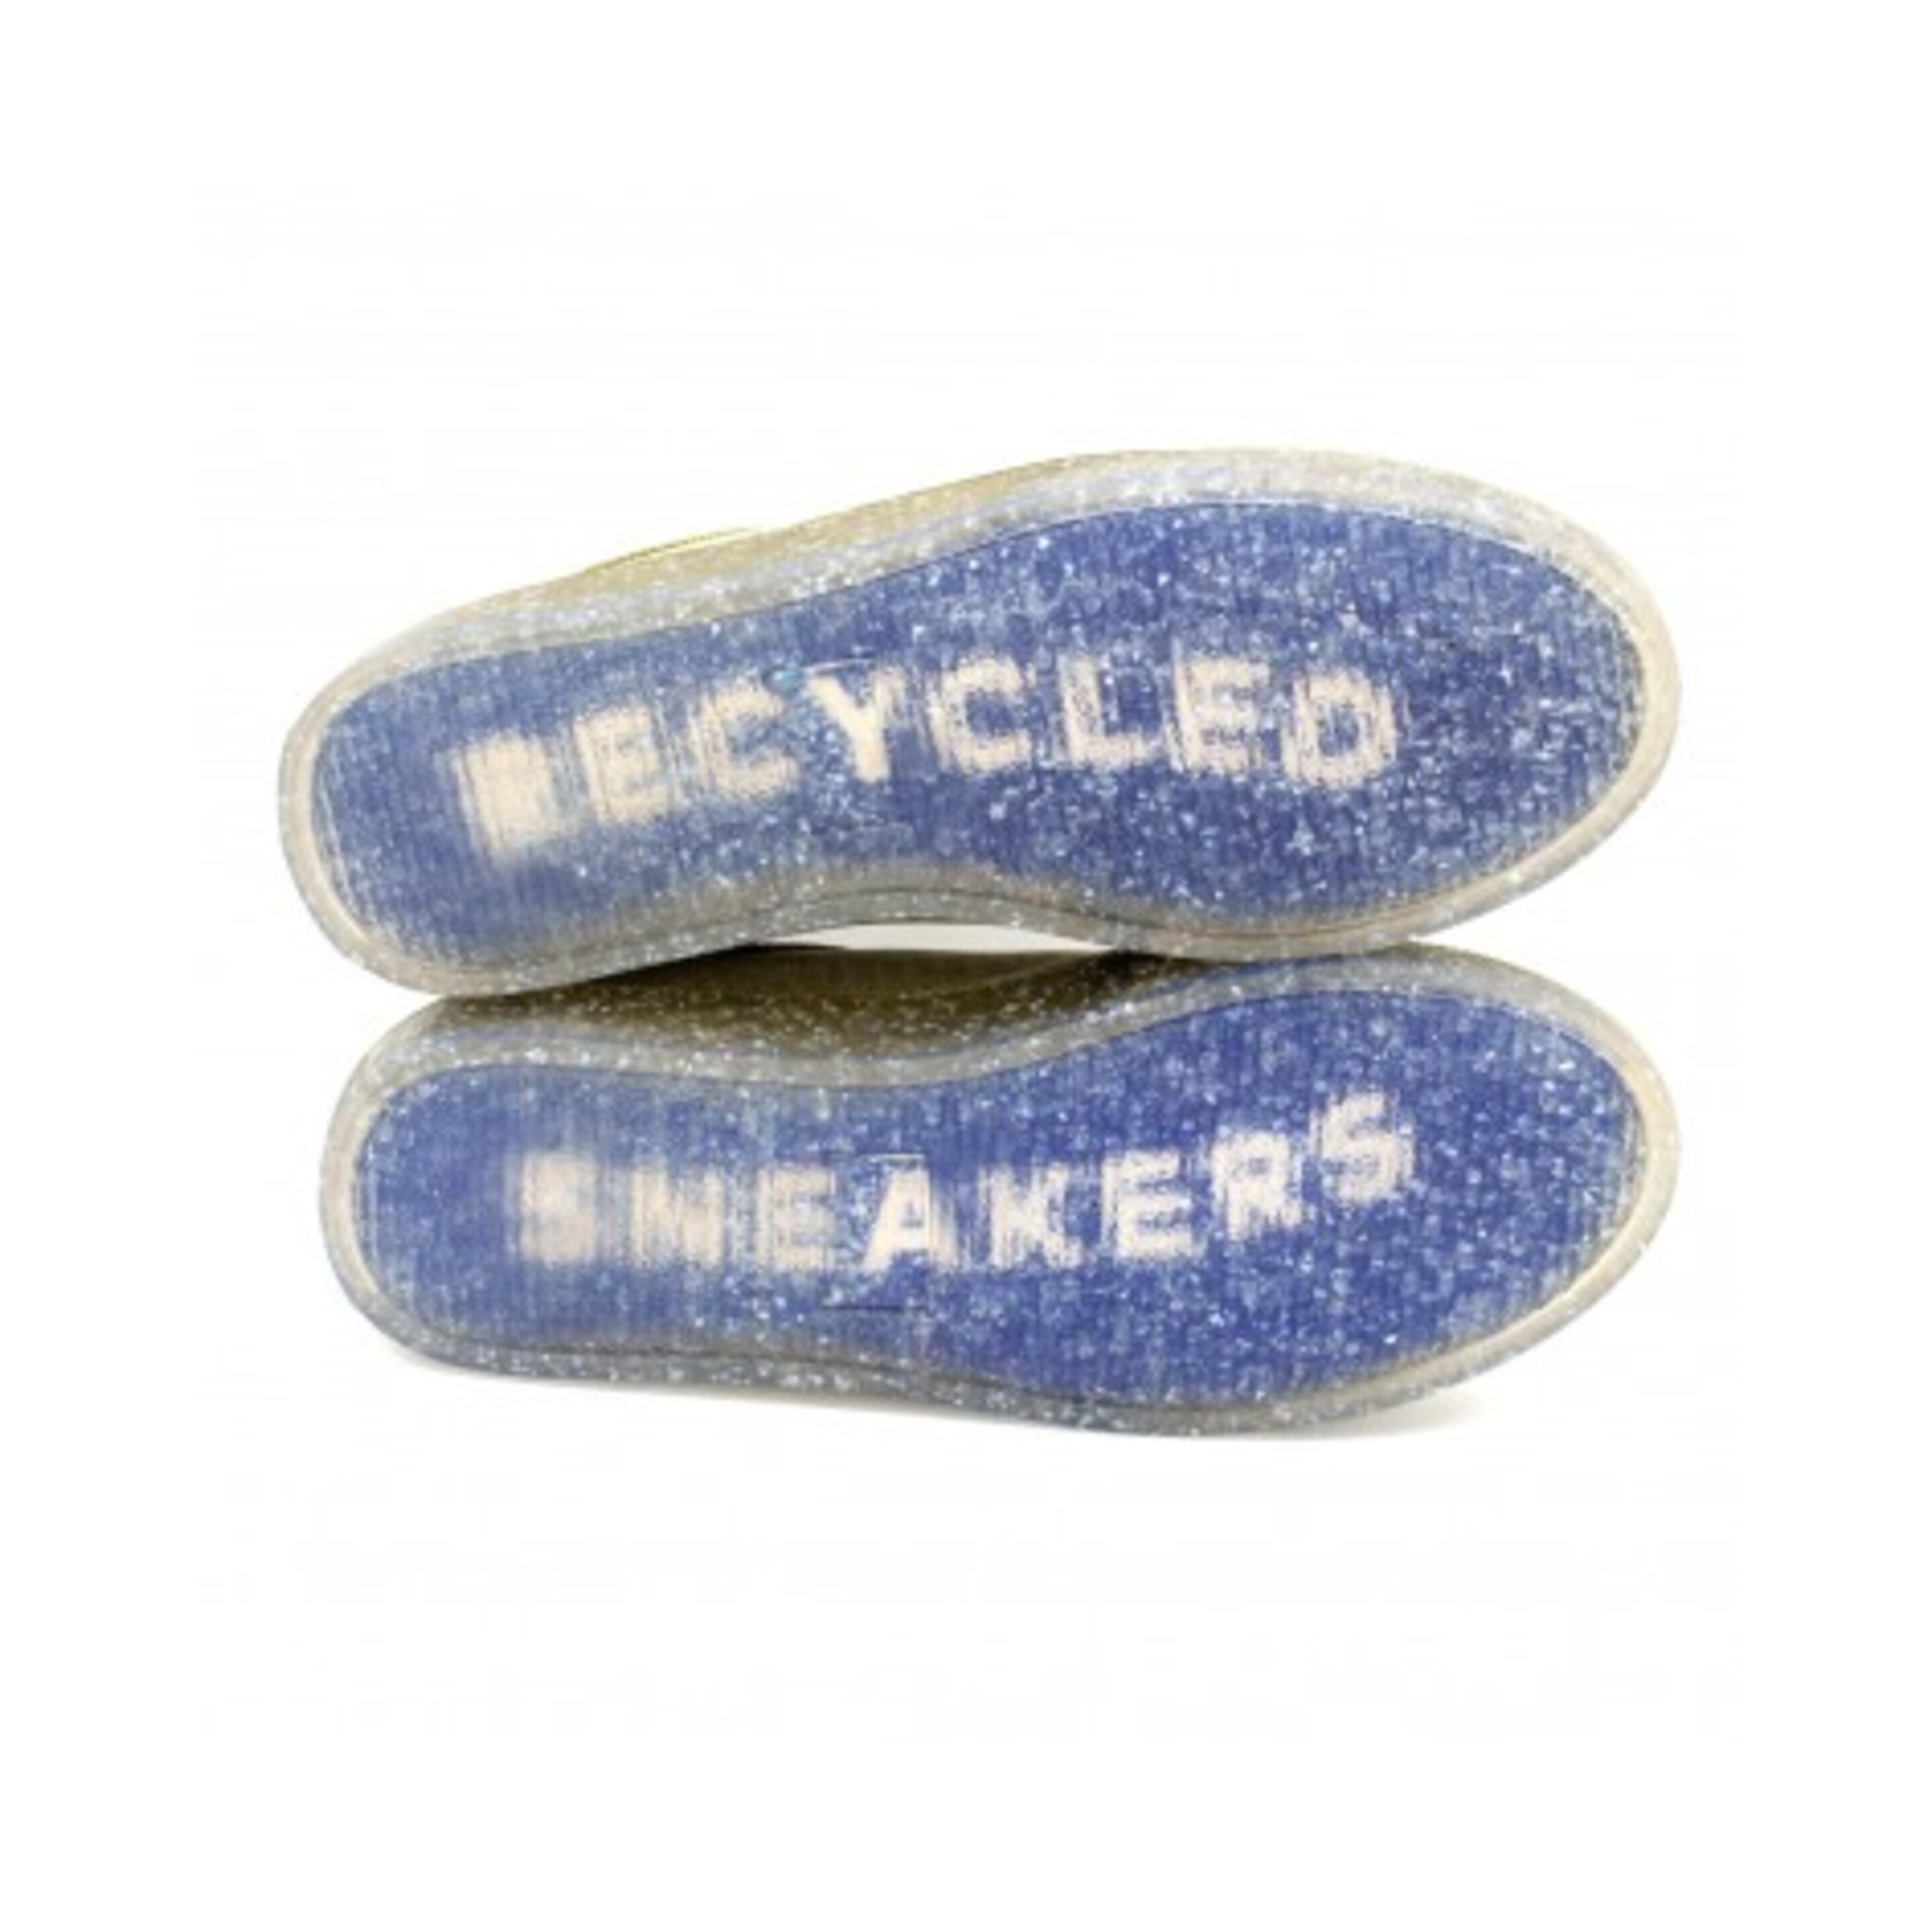 Sneaker Recykers Peckham - blanco - Recycled Sneakers  MKP